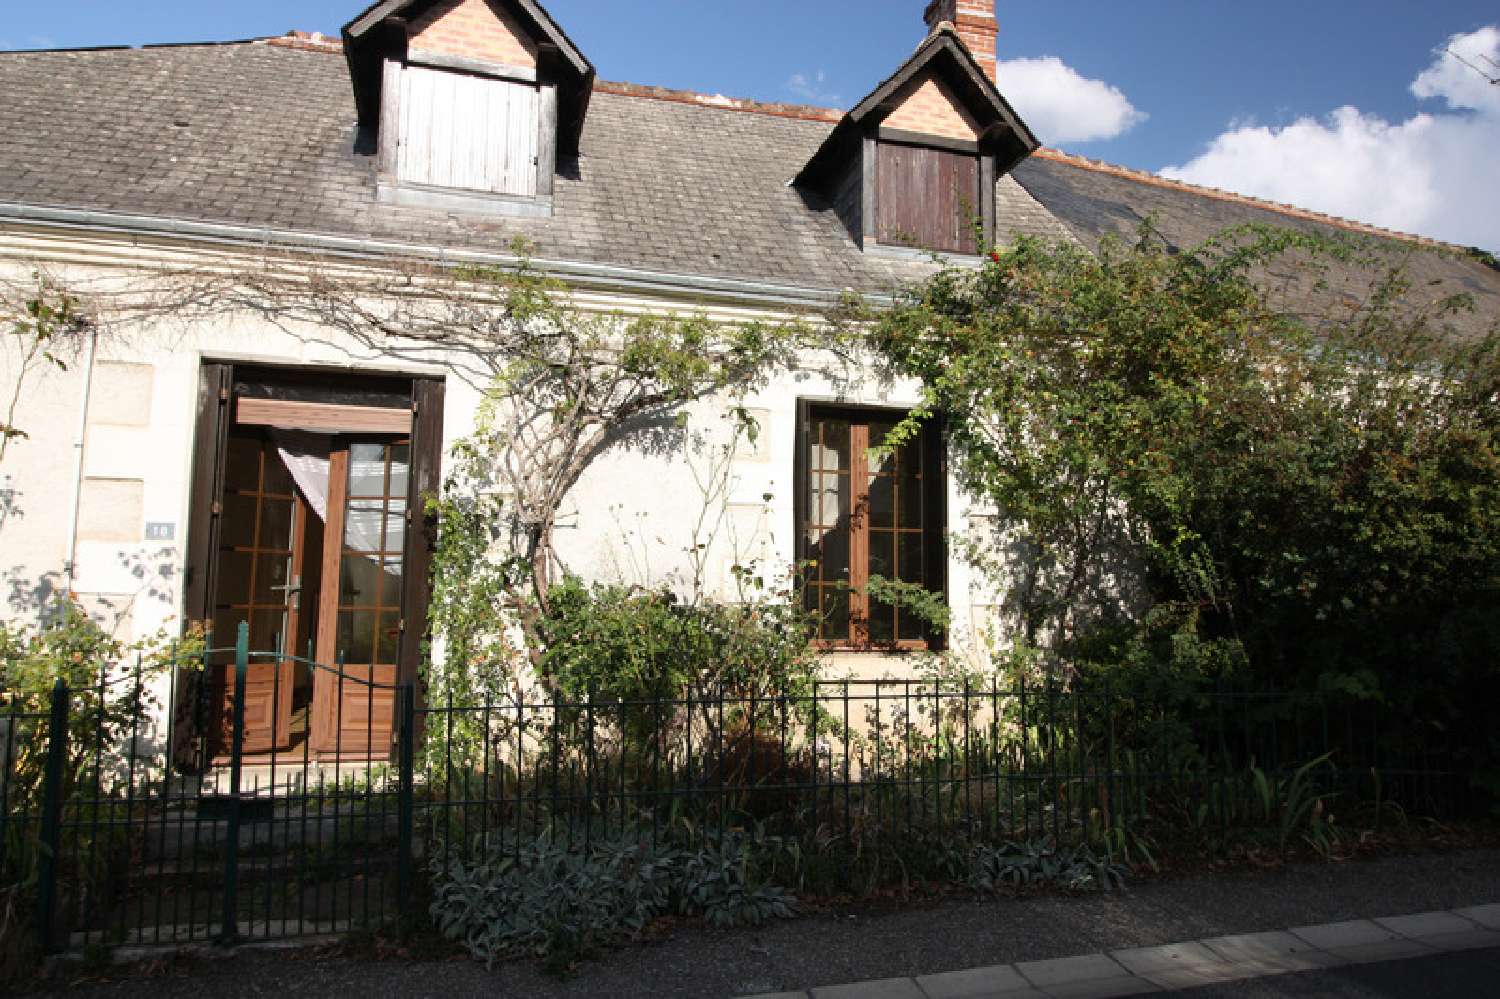  for sale village house Azay-sur-Cher Indre-et-Loire 1